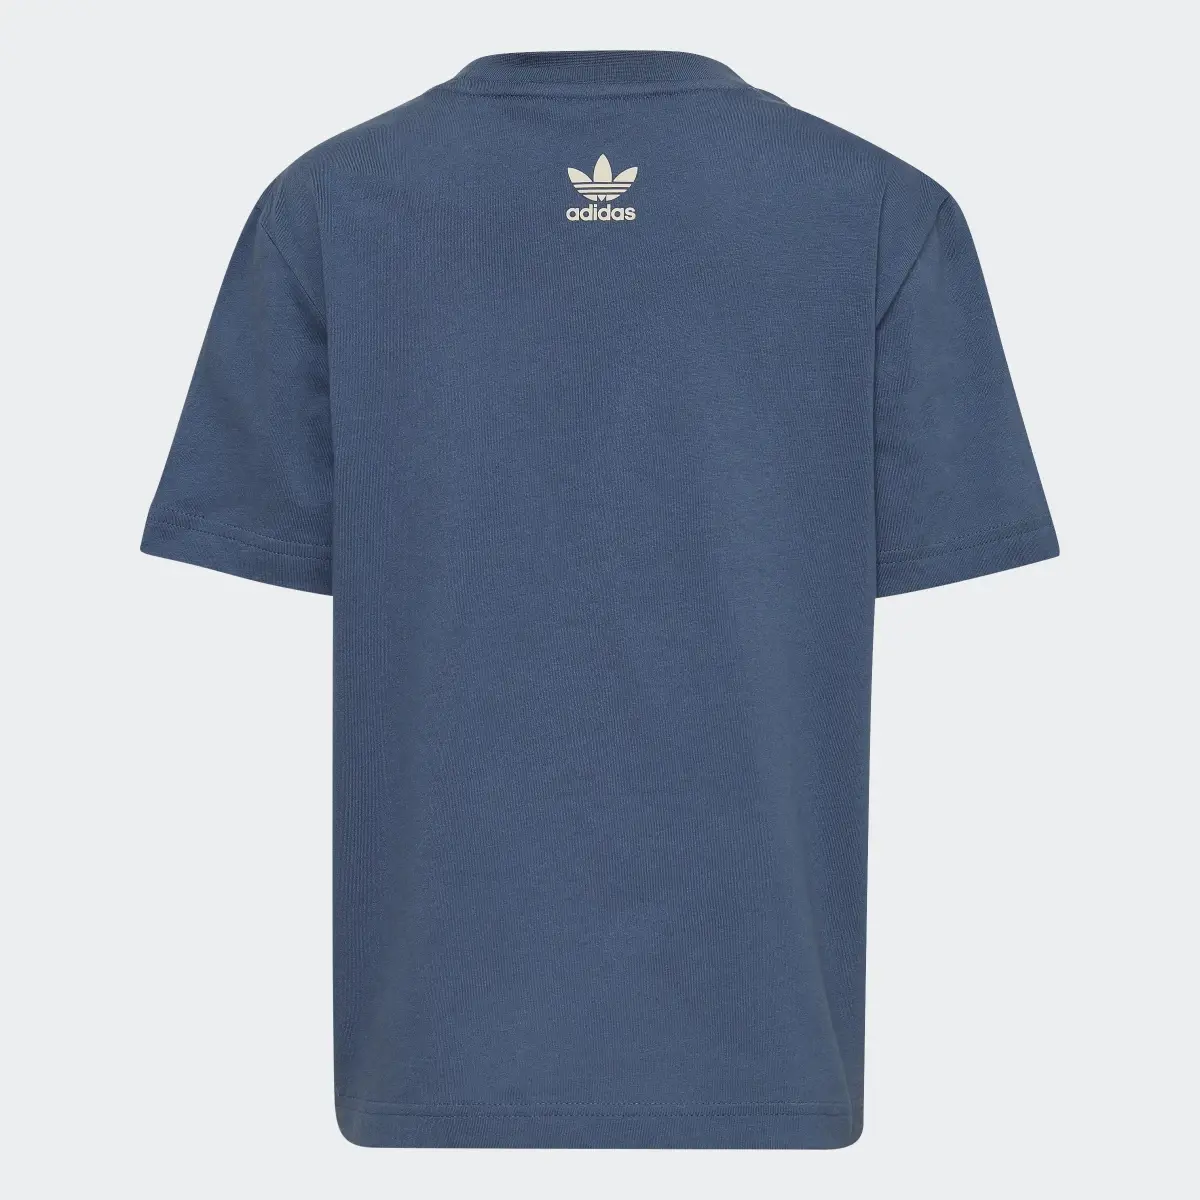 Adidas Graphic Tişört. 2